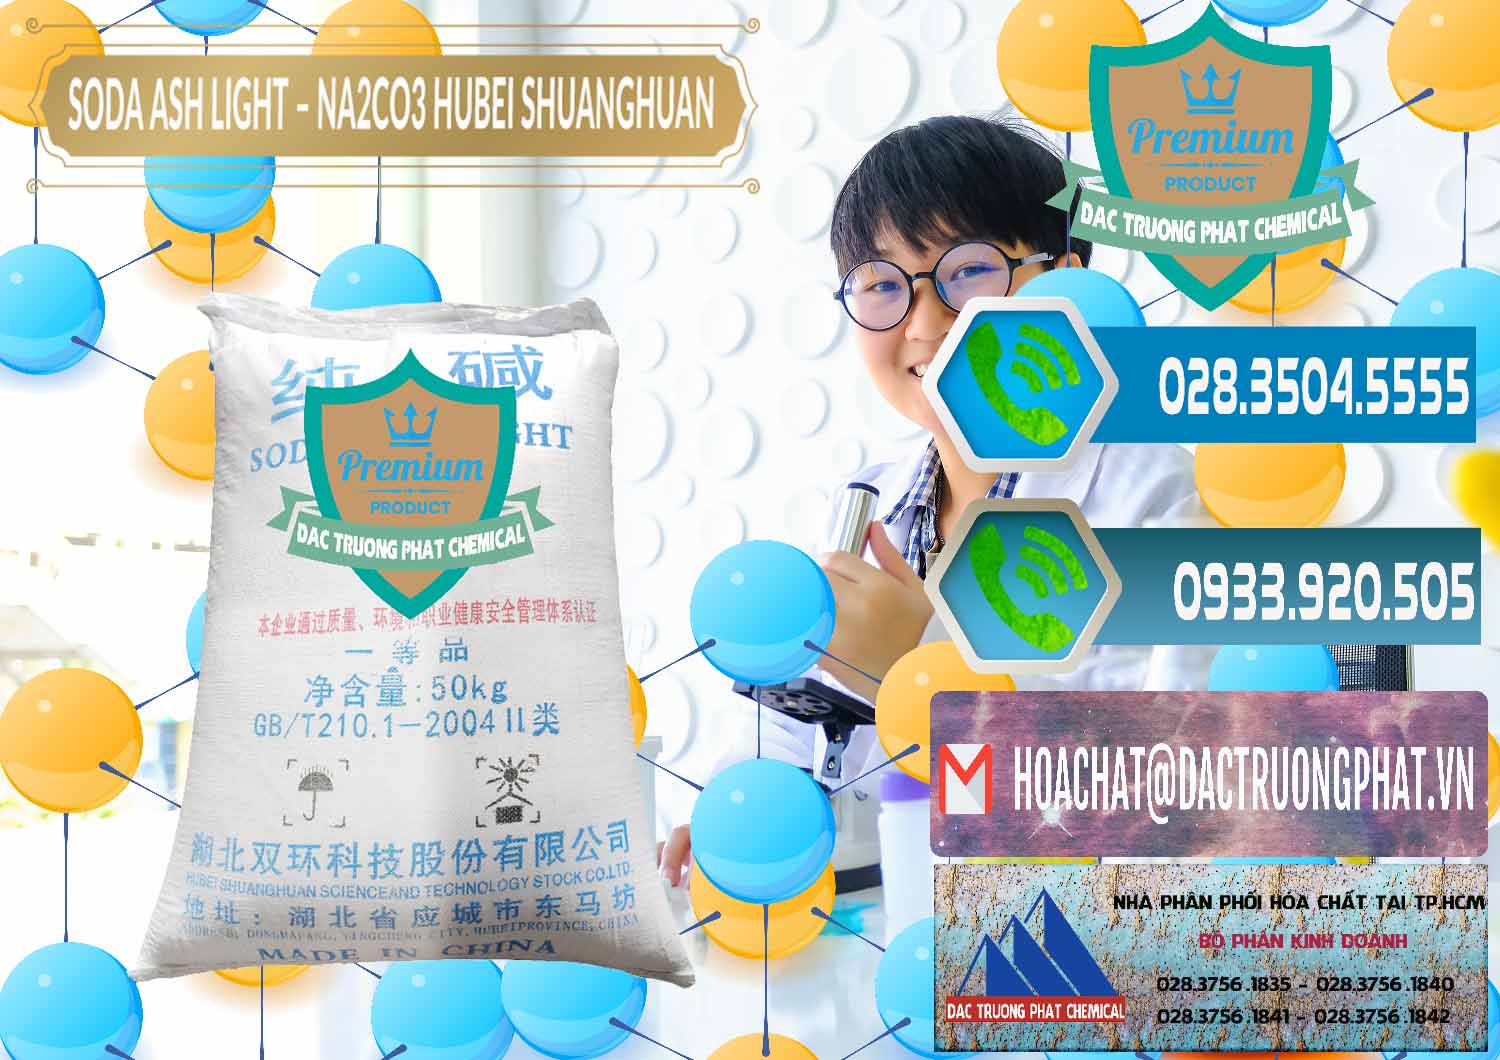 Nơi cung cấp - bán Soda Ash Light - NA2CO3 2 Vòng Tròn Hubei Shuanghuan Trung Quốc China - 0130 - Cty kinh doanh _ cung cấp hóa chất tại TP.HCM - congtyhoachat.net